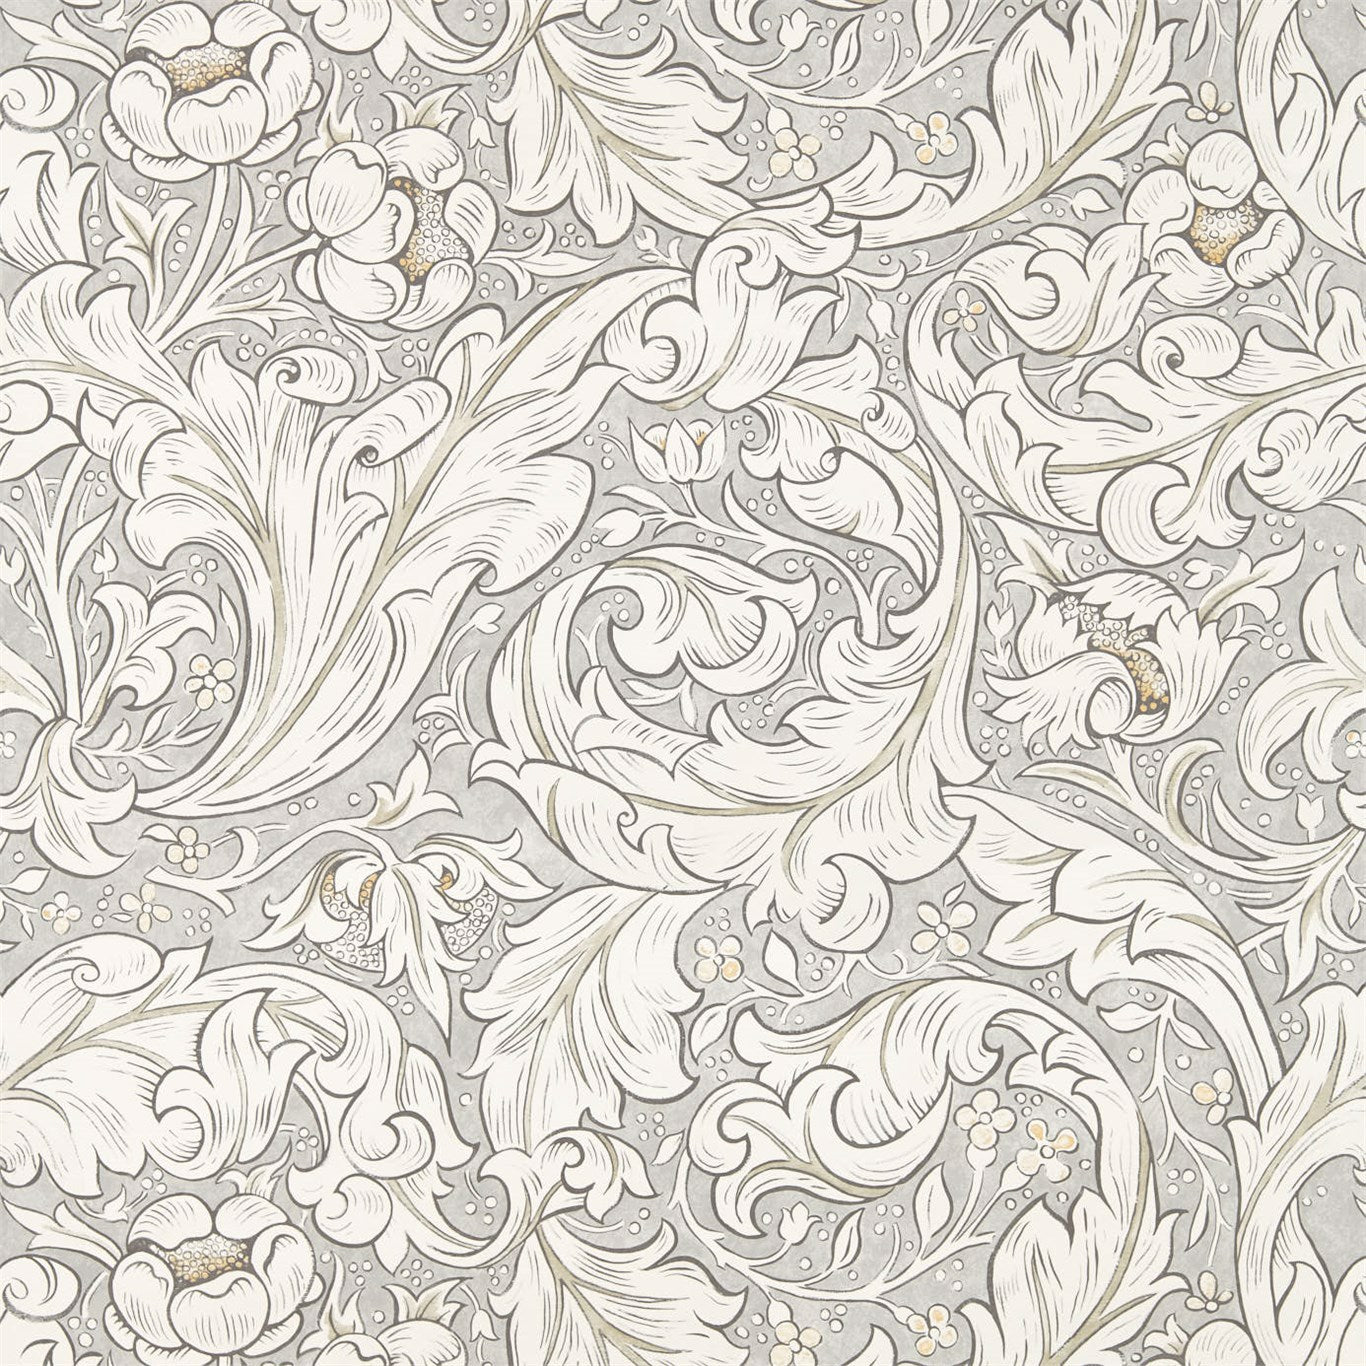 Bachelors Button Stone/Linen Wallpaper DMPU216050 by Morris & Co